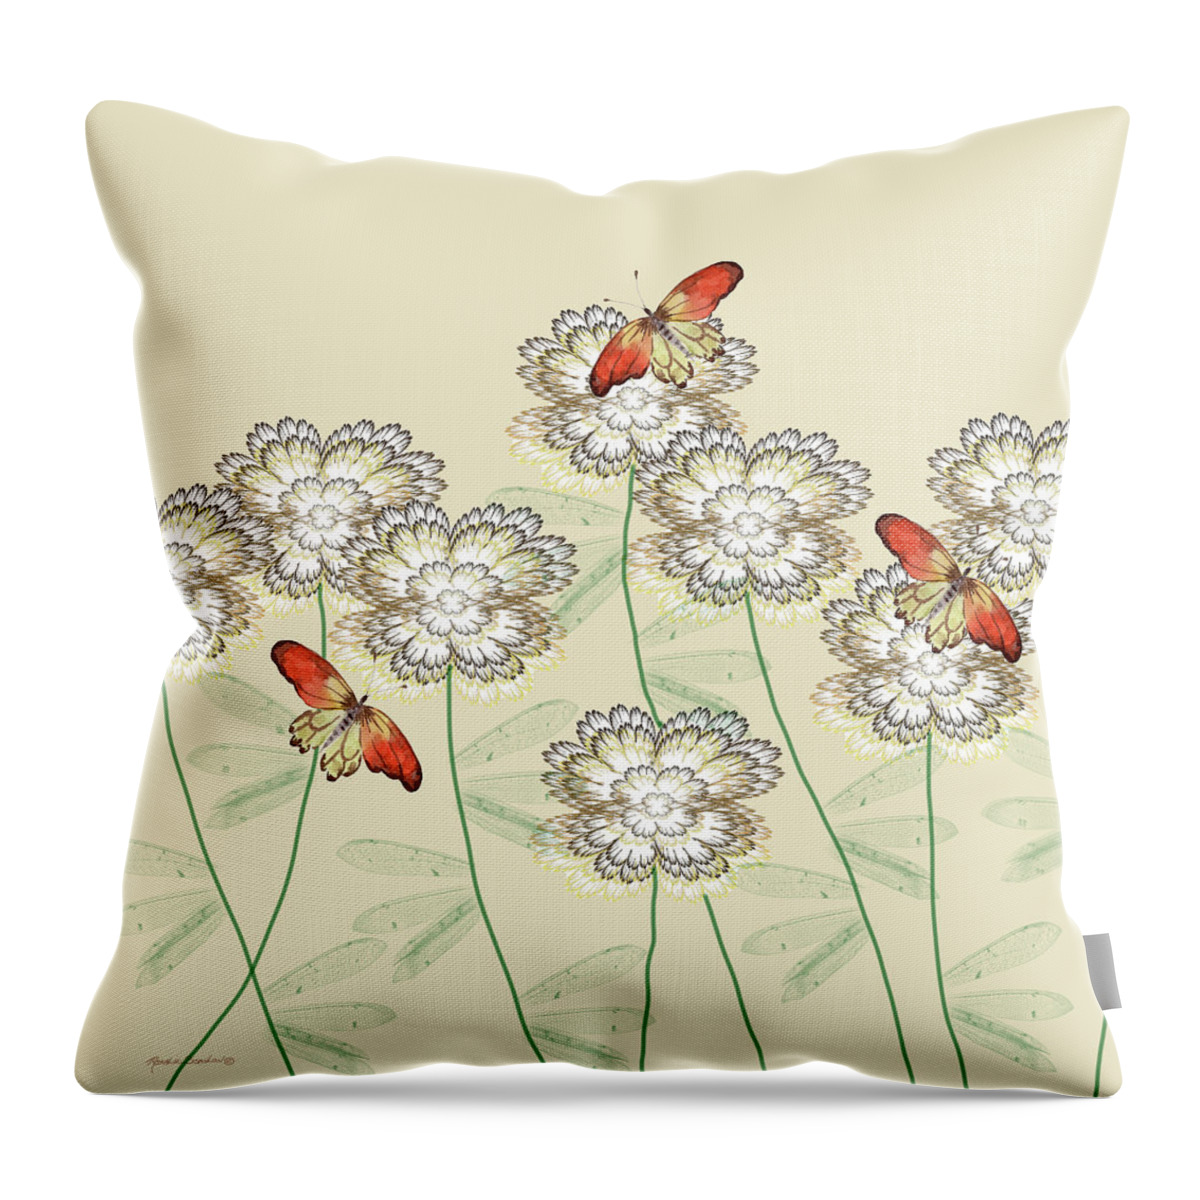 Flower Garden Throw Pillow featuring the mixed media Incendia Flower Garden by Rosalie Scanlon